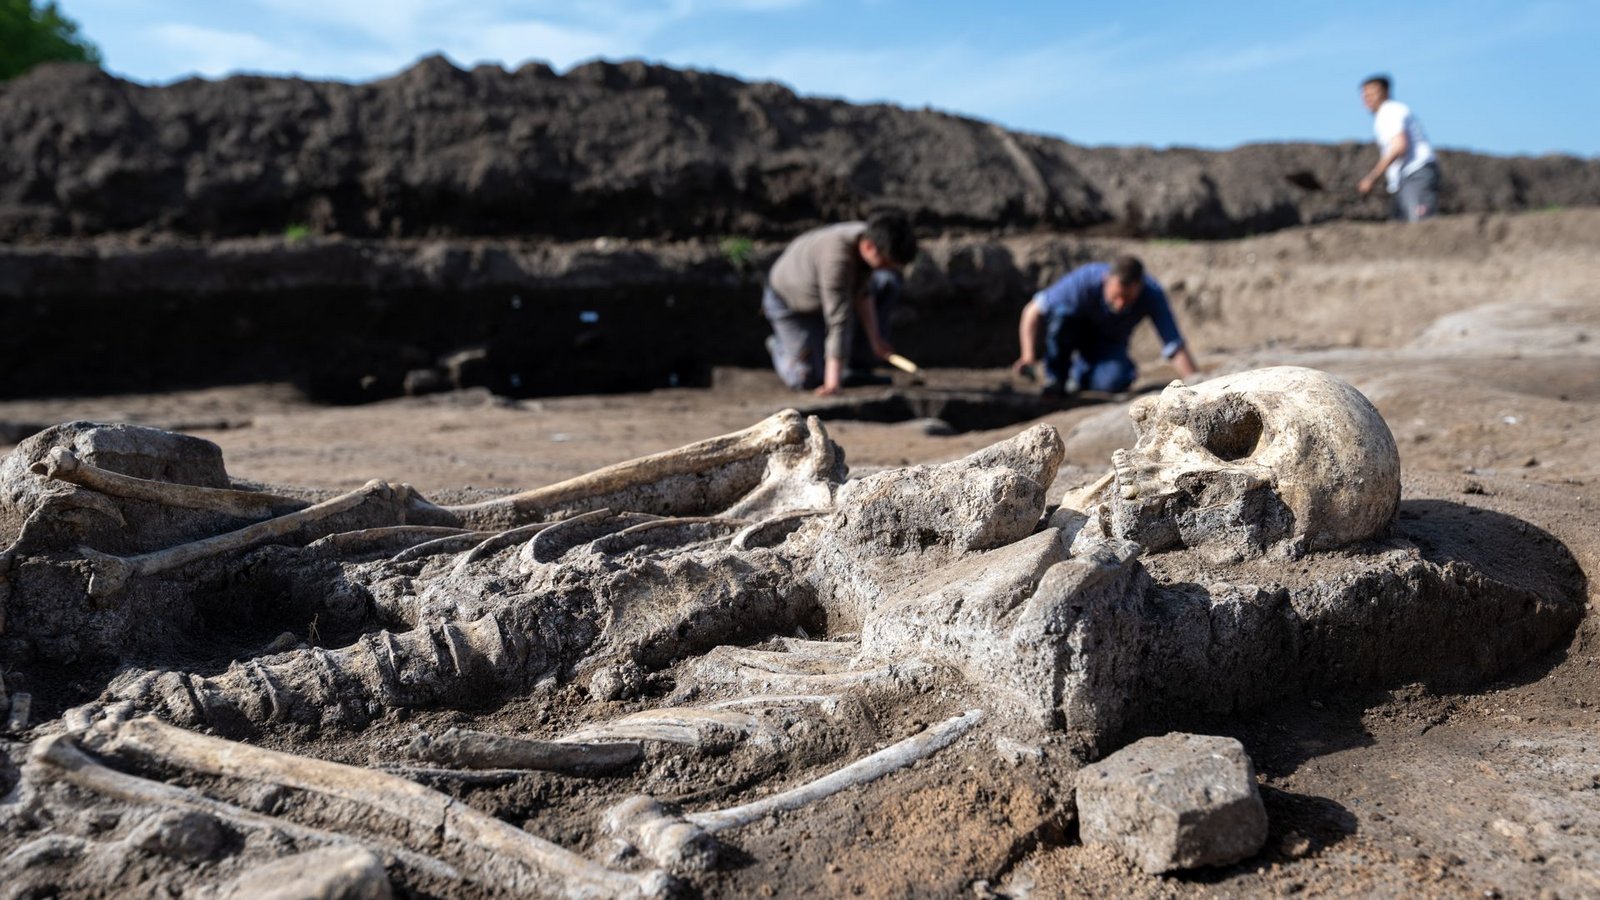 Archäologen arbeiten auf dem Grabungsfeld einer Kirche bei Memleben an Bestattungen.Foto: dpa/Hendrik Schmidt